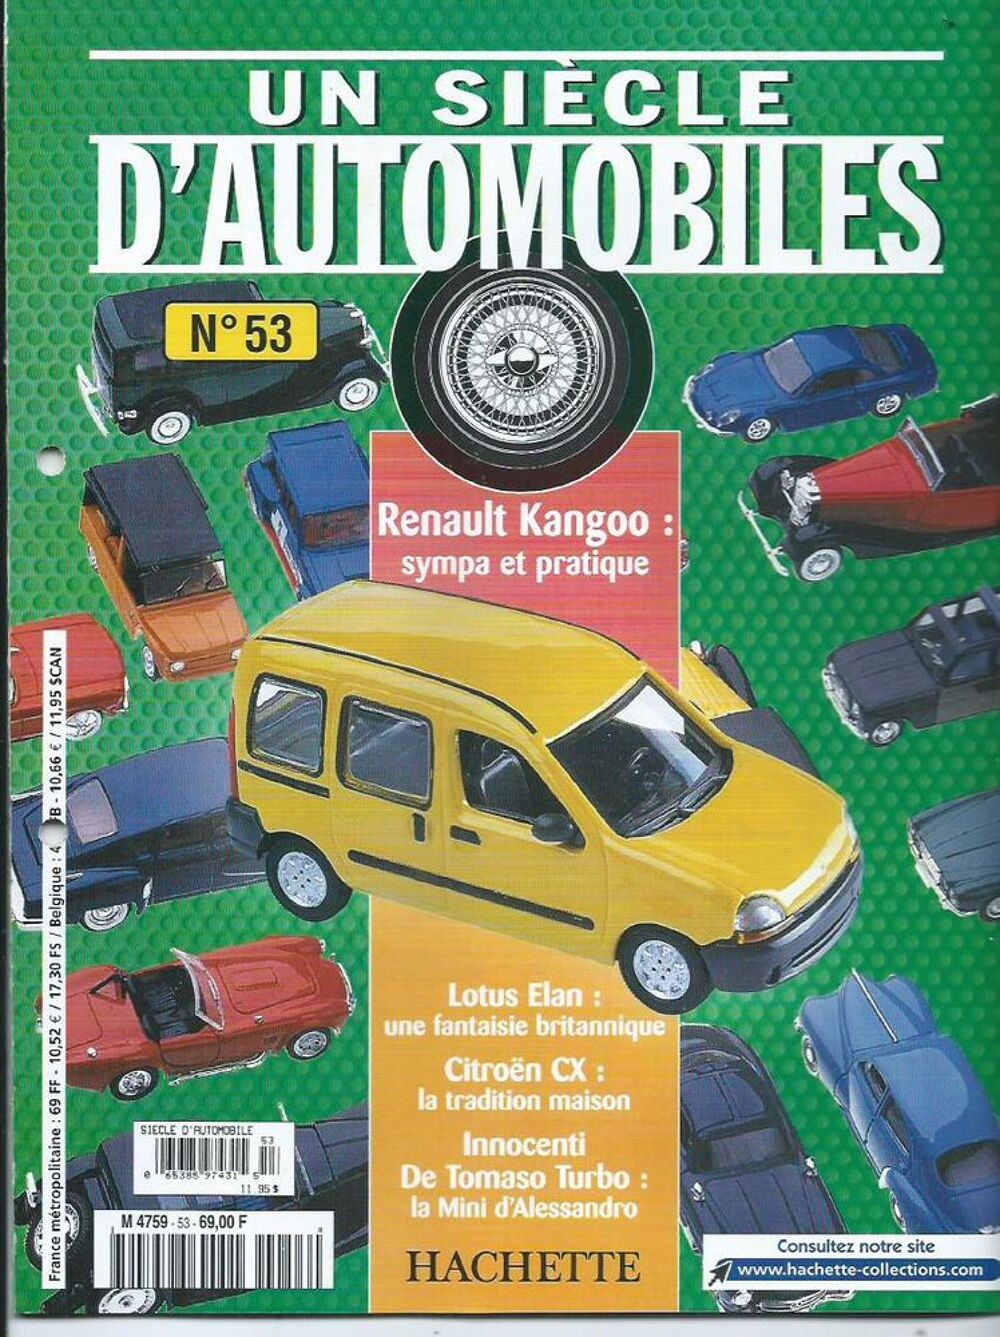 Renault kangoo 1/43 + Le fascicule n&deg; 53 + boite marque soli 